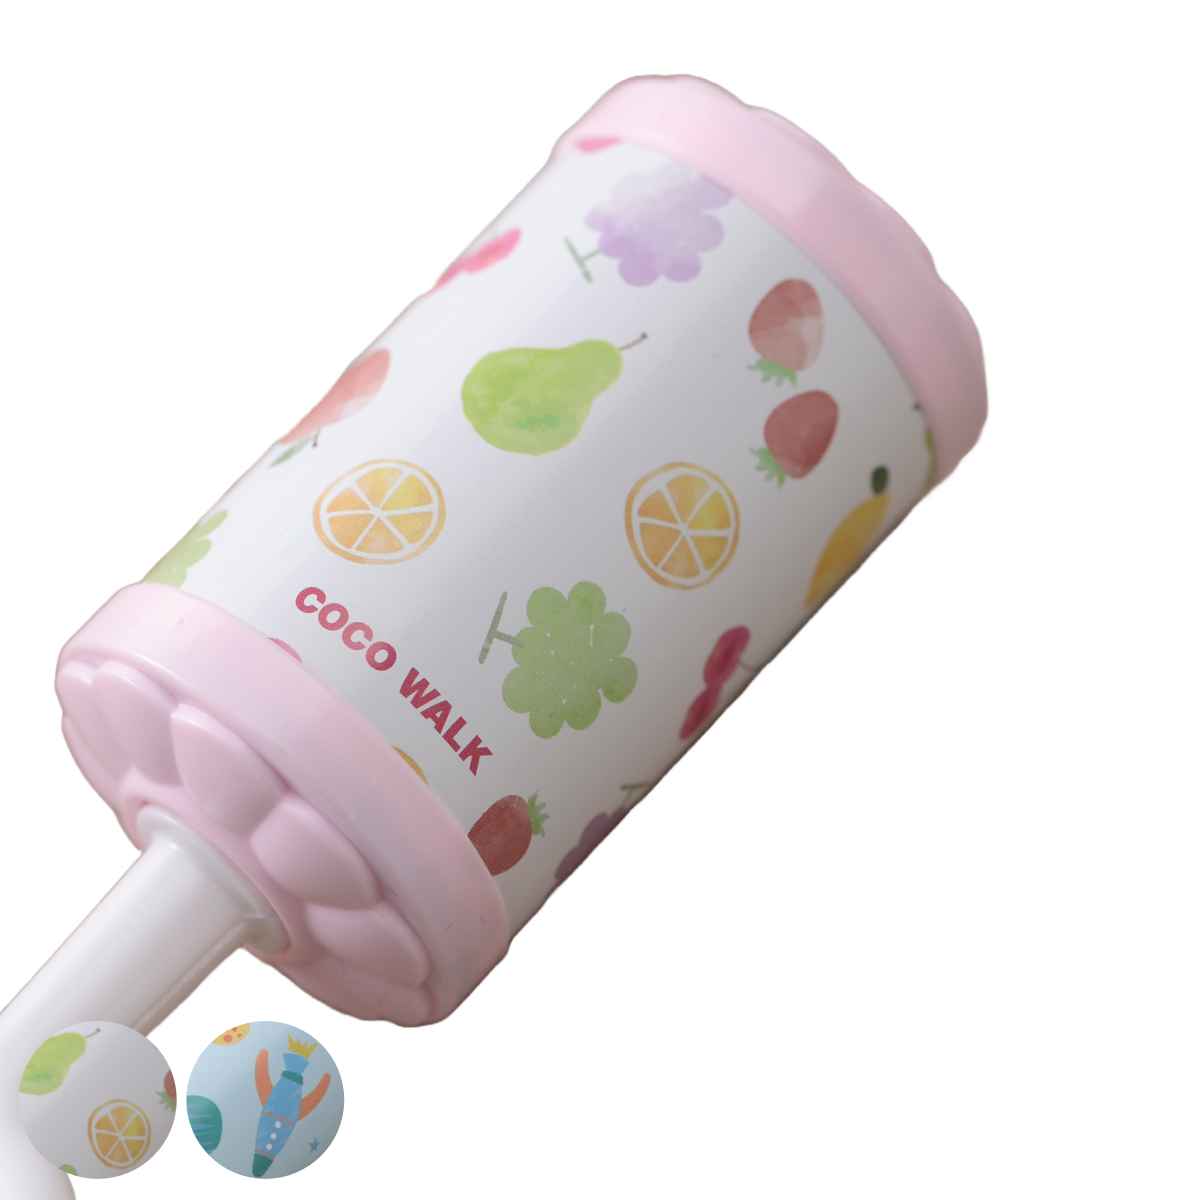 おもちゃ ベビー コロン ガラガラ （ ラトル にぎにぎ 果物 ロケット ファーストトイ 日本製 贈り物 ギフト 赤ちゃん 子供 男の子 女の子